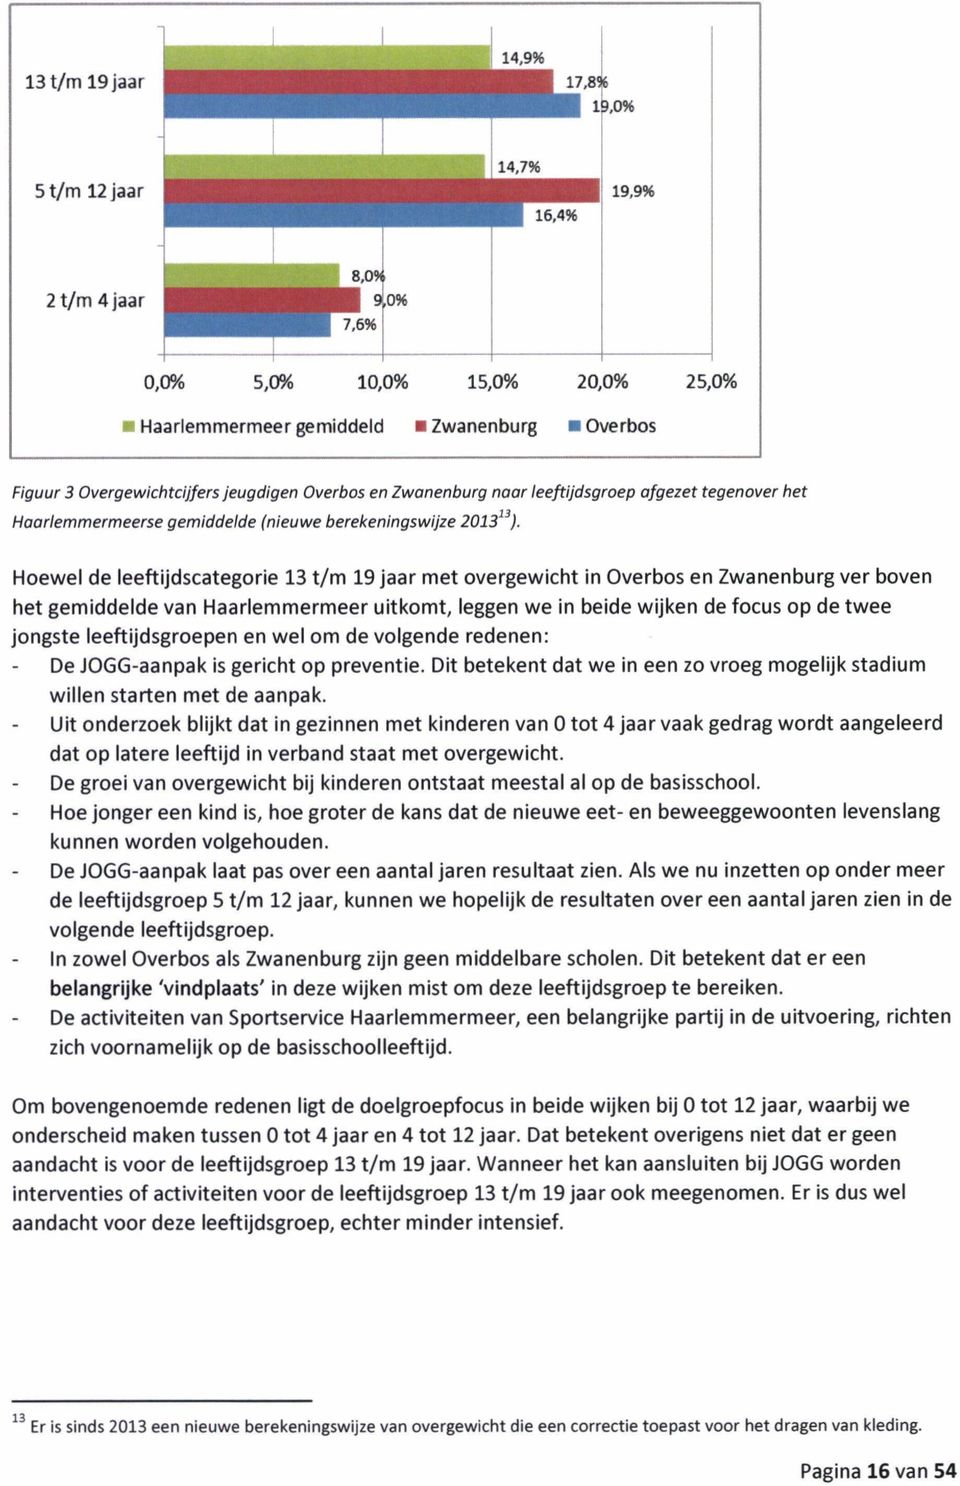 Hoewel de leeftijdscategorie 13 t/m 19 jaar met overgewicht in Overbos en Zwanenburg ver boven het gemiddelde van Haarlemmermeer uitkomt, leggen we in beide wijken de focus op de twee jongste